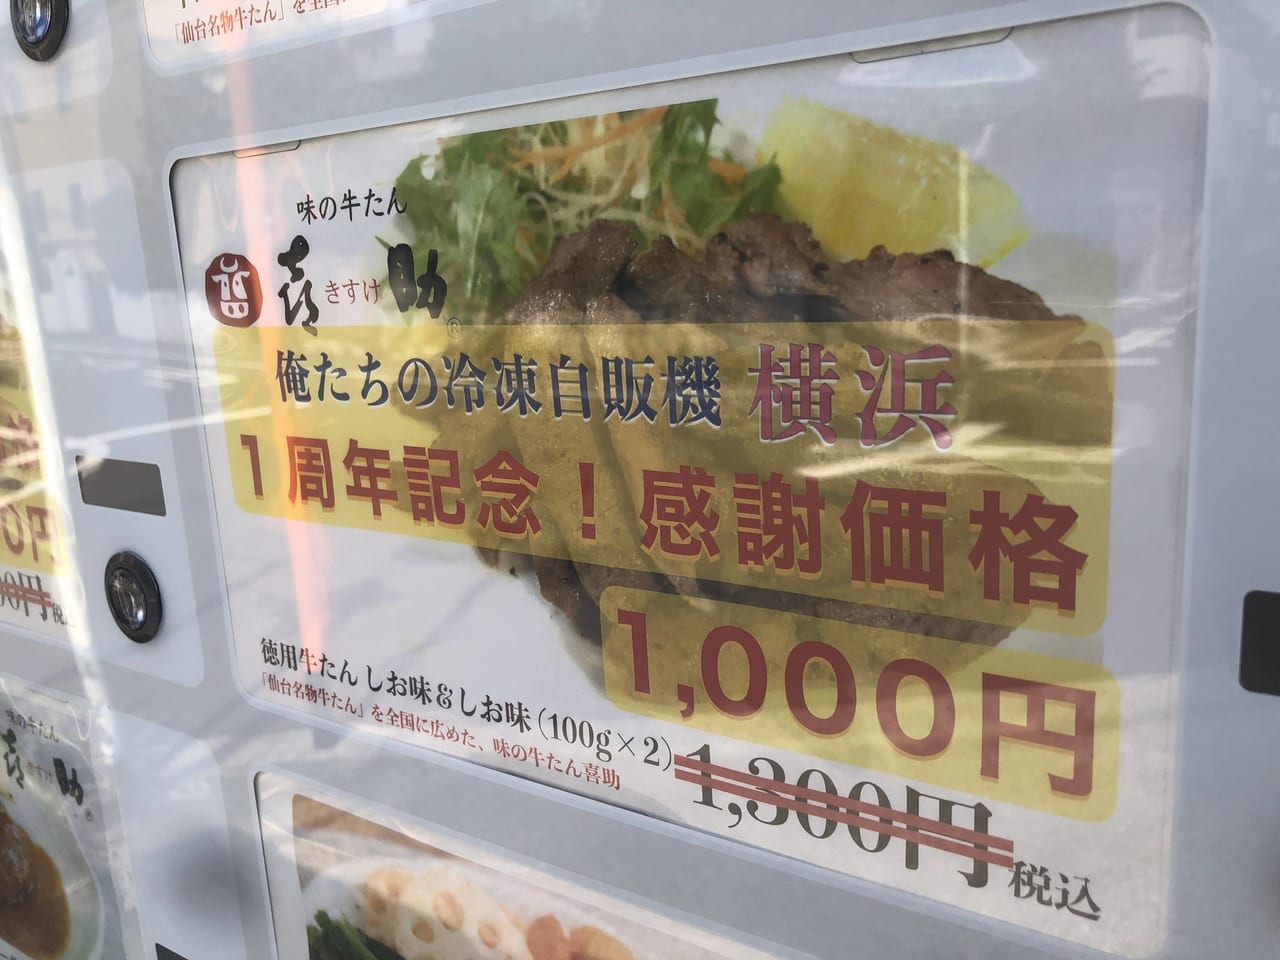 俺たちの冷凍自販機・横浜